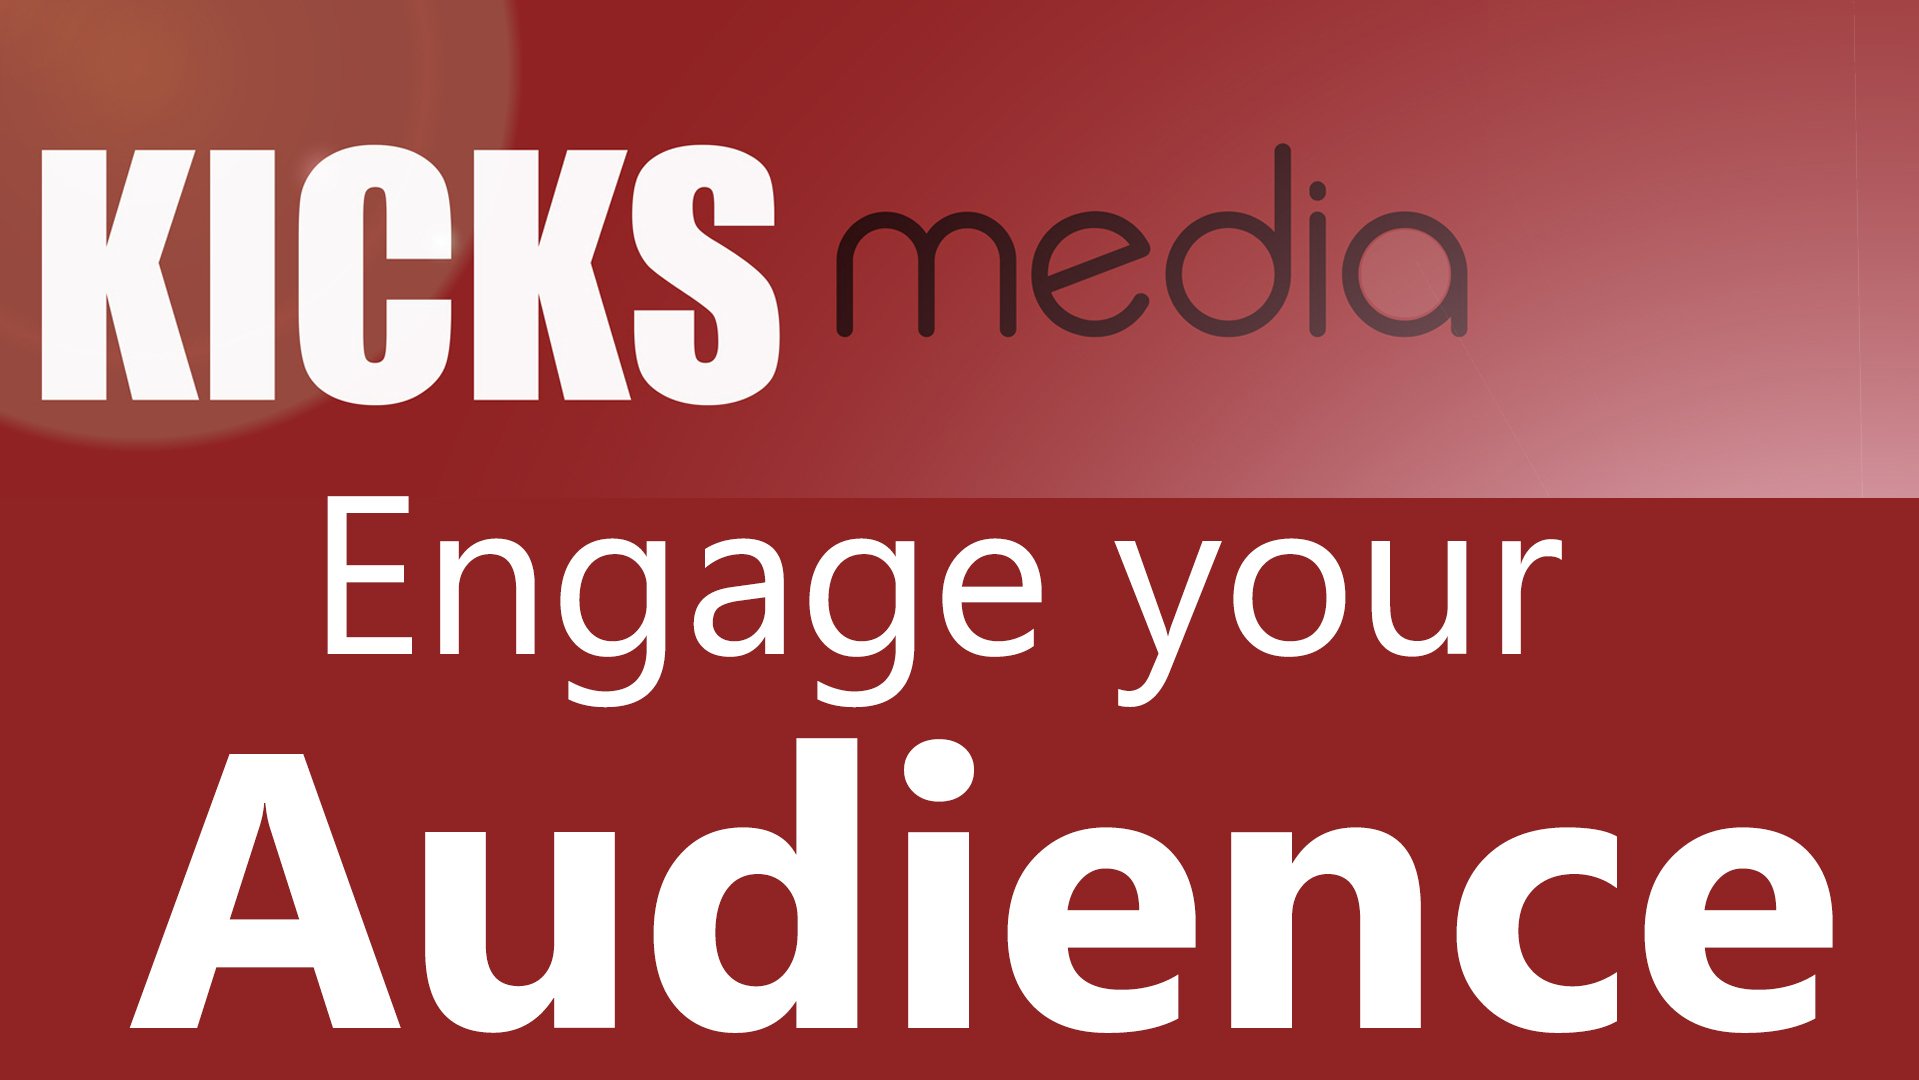 Kicksmedia Engage Your Audience